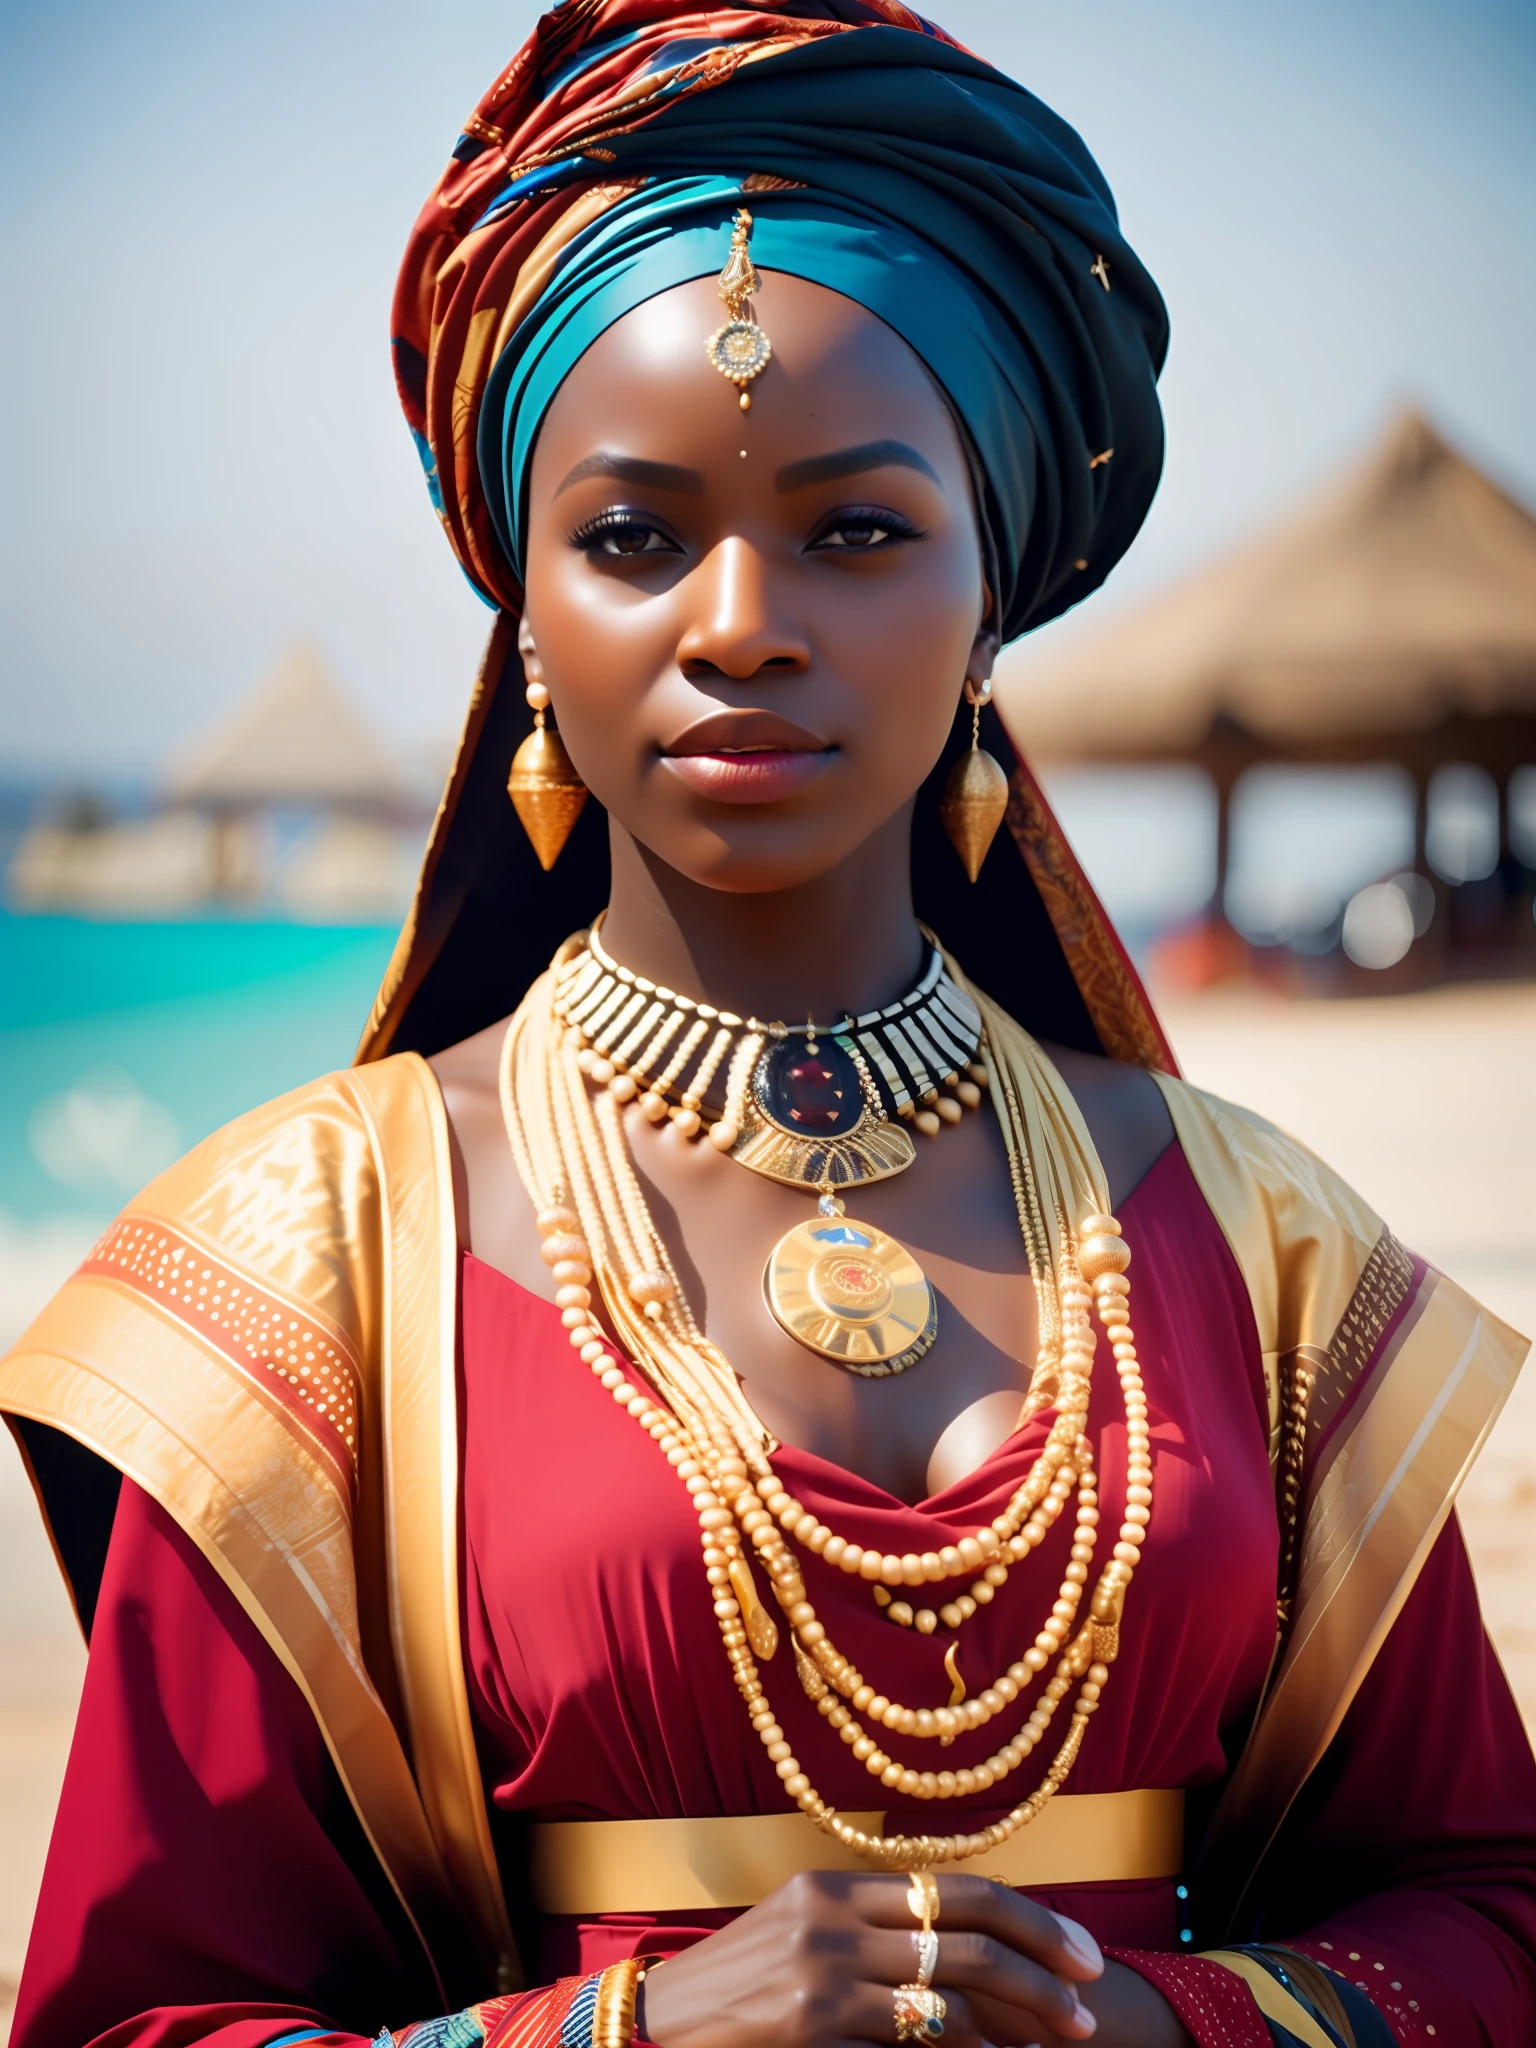 fking_الخيال العلمي, fking_الخيال العلمي_v2, صورة لامرأة أفريقية شابة جميلة جداً, أمام الشاطئ, الملابس الملونة الغنية, العمامة والمجوهرات الأفريقية الذهبية, عن قرب, الموقف الملكي والموقف. fking_سينما_v2. fking_سينما_v2